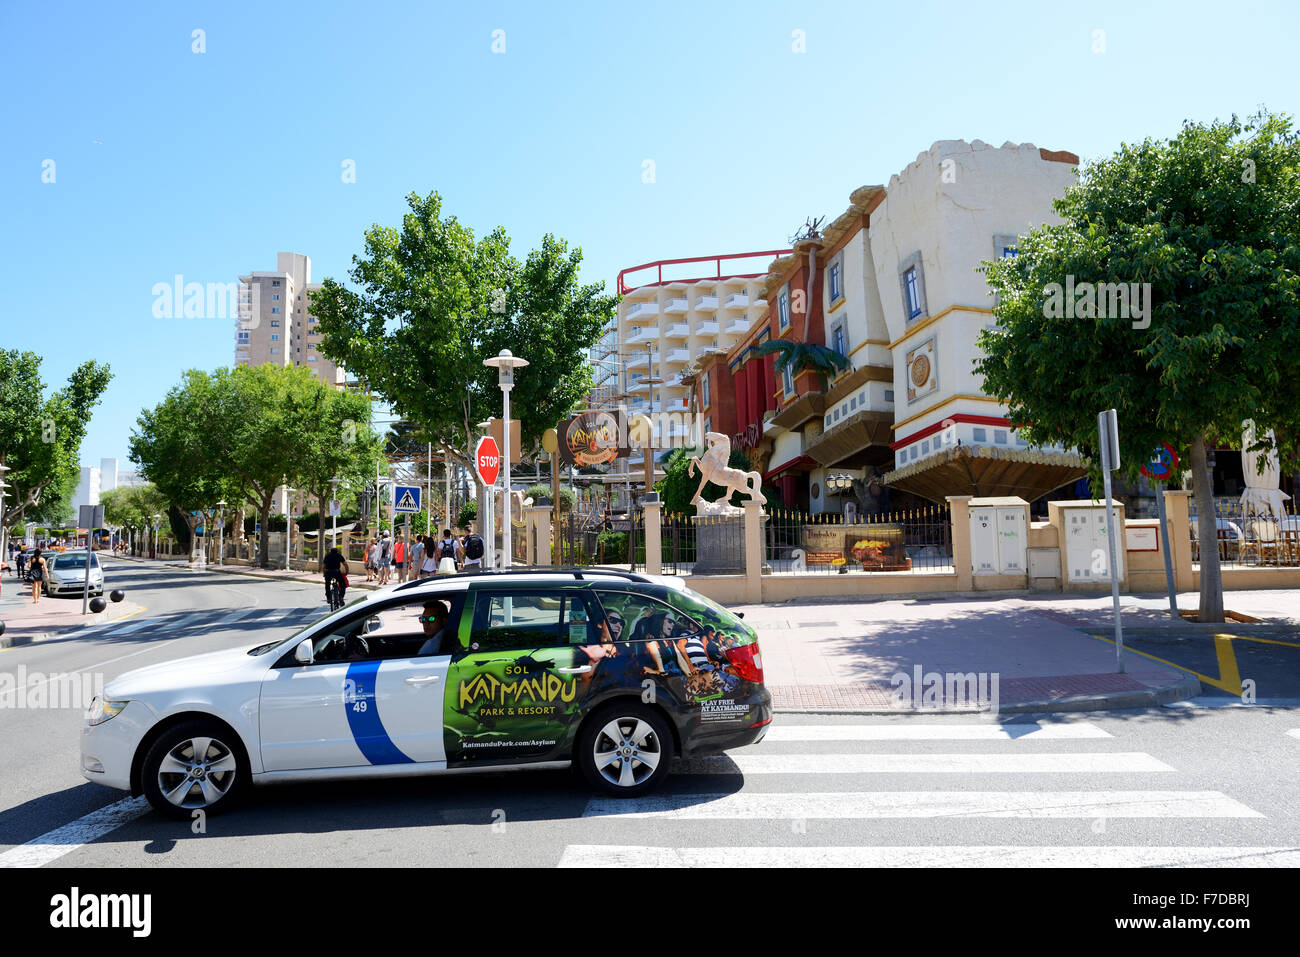 The taxi car and tourists enjoiying their vacation near Katmandu Park, Mallorca, Spain Stock Photo